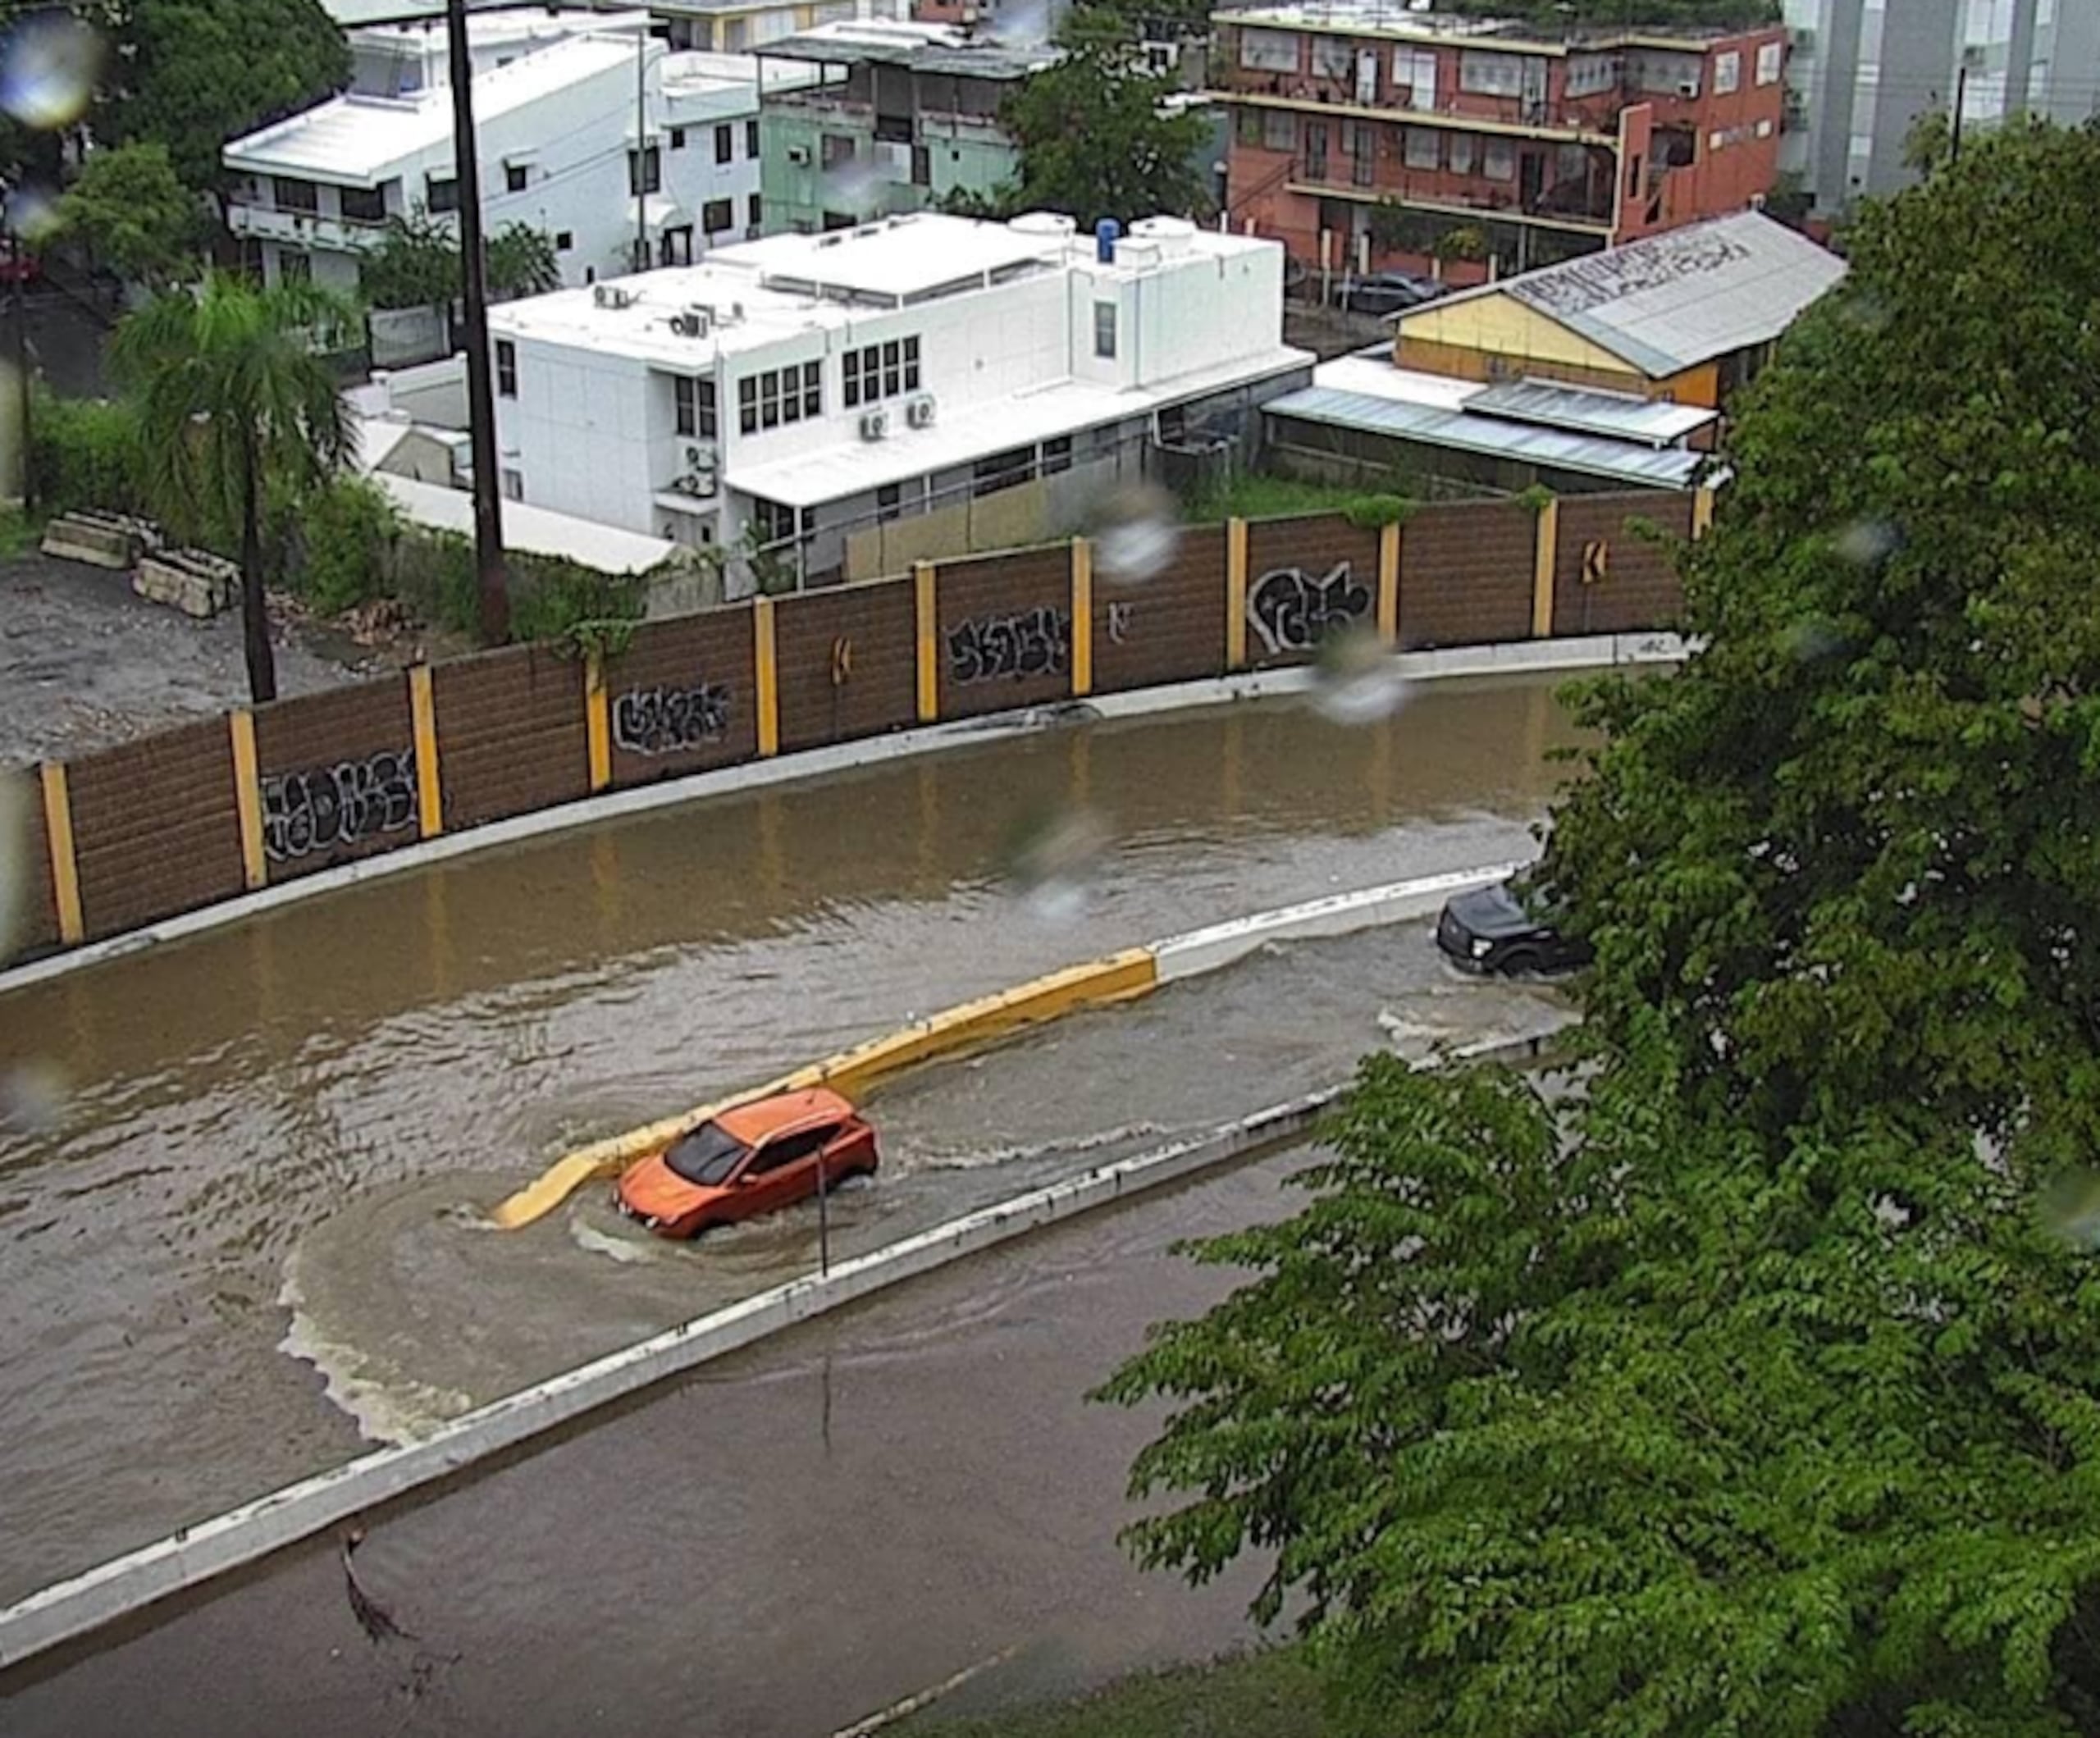 Son recurrentes las inundaciones con carros atrapados en las cercanías del Túnel Minillas.